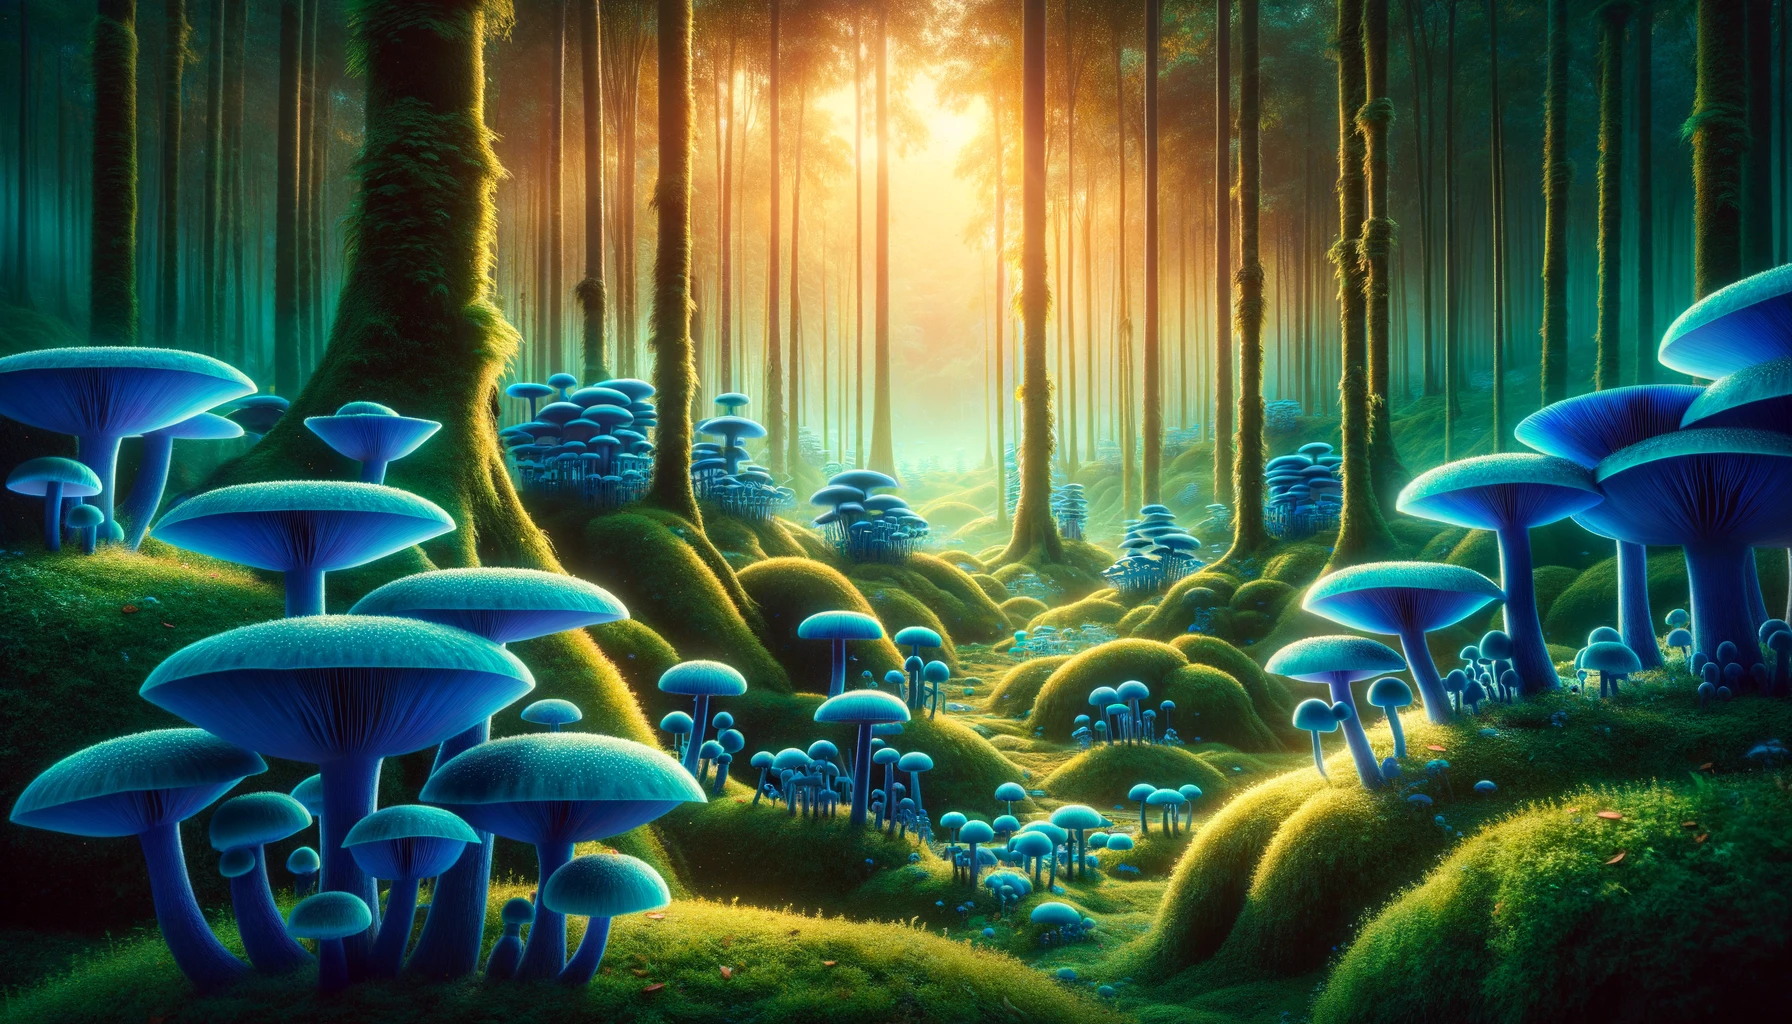 Blue magic mushroom